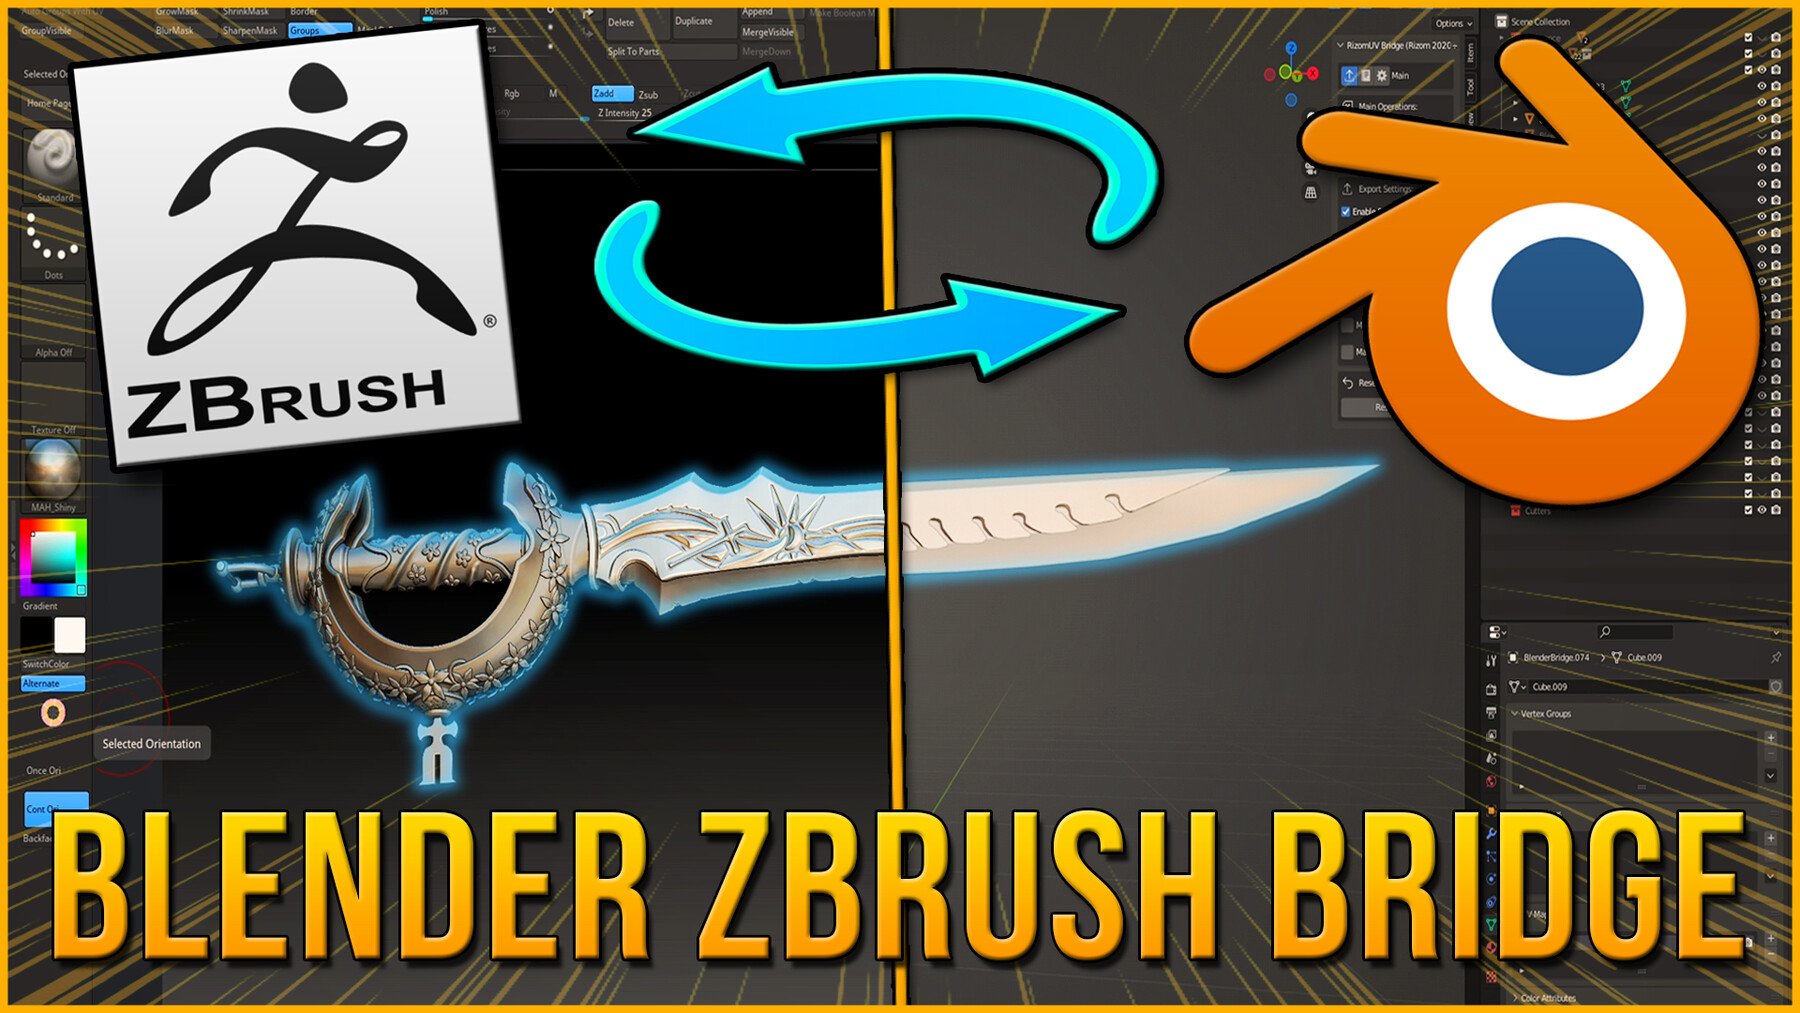 Blender to Zbrush Bridge 3D Model[ArtStation]